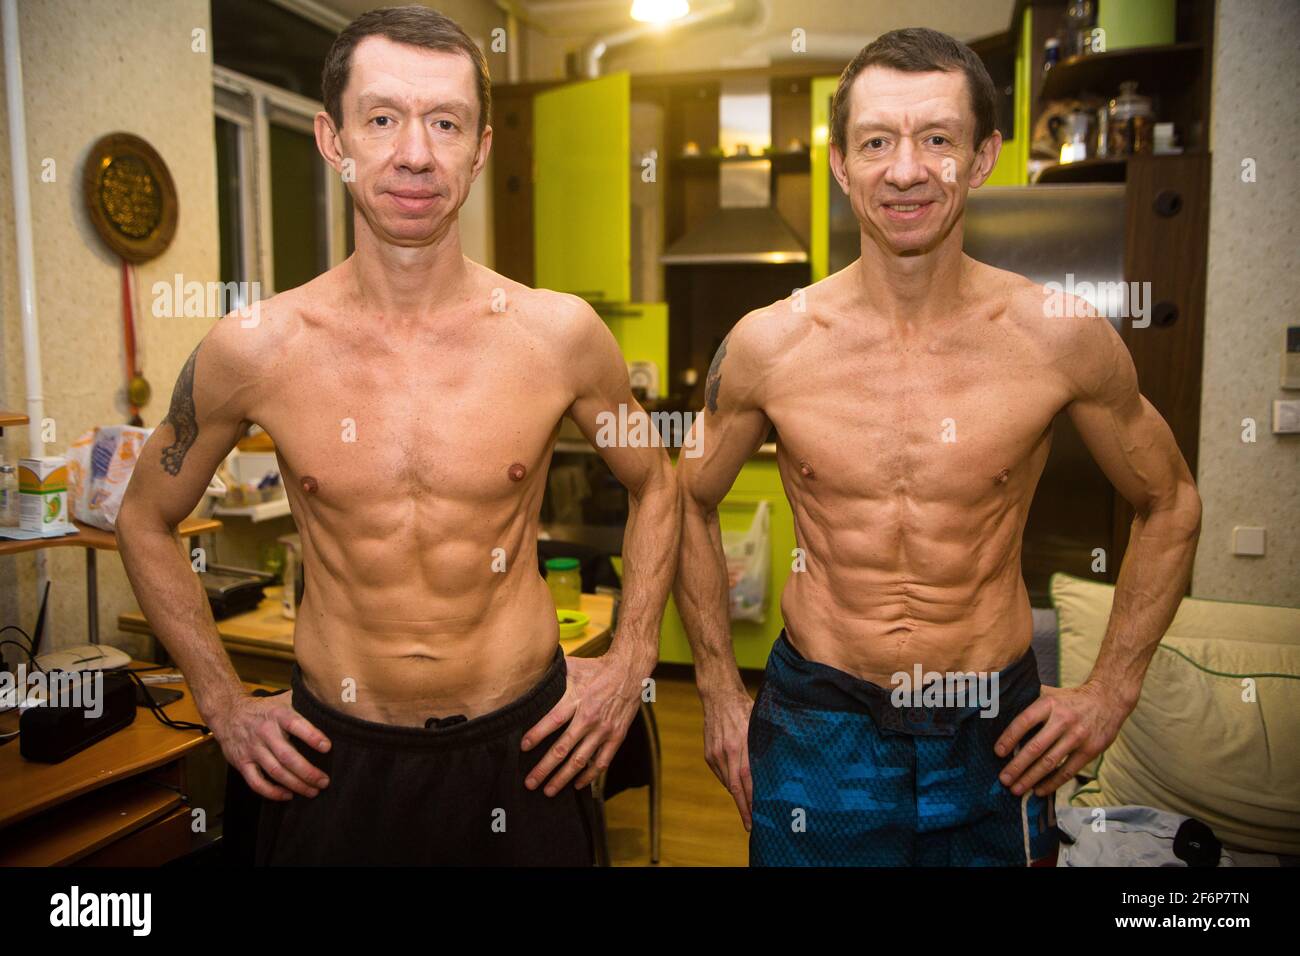 Der ukrainische (Dnepr) Zwilling bros Alex und Yury Yarmolenko (11. Juni 1970), Kickboxen bei den europäischen champions und Trainer hier, beide 50 Jahre alt, posieren wie Bruce Lee Stockfoto